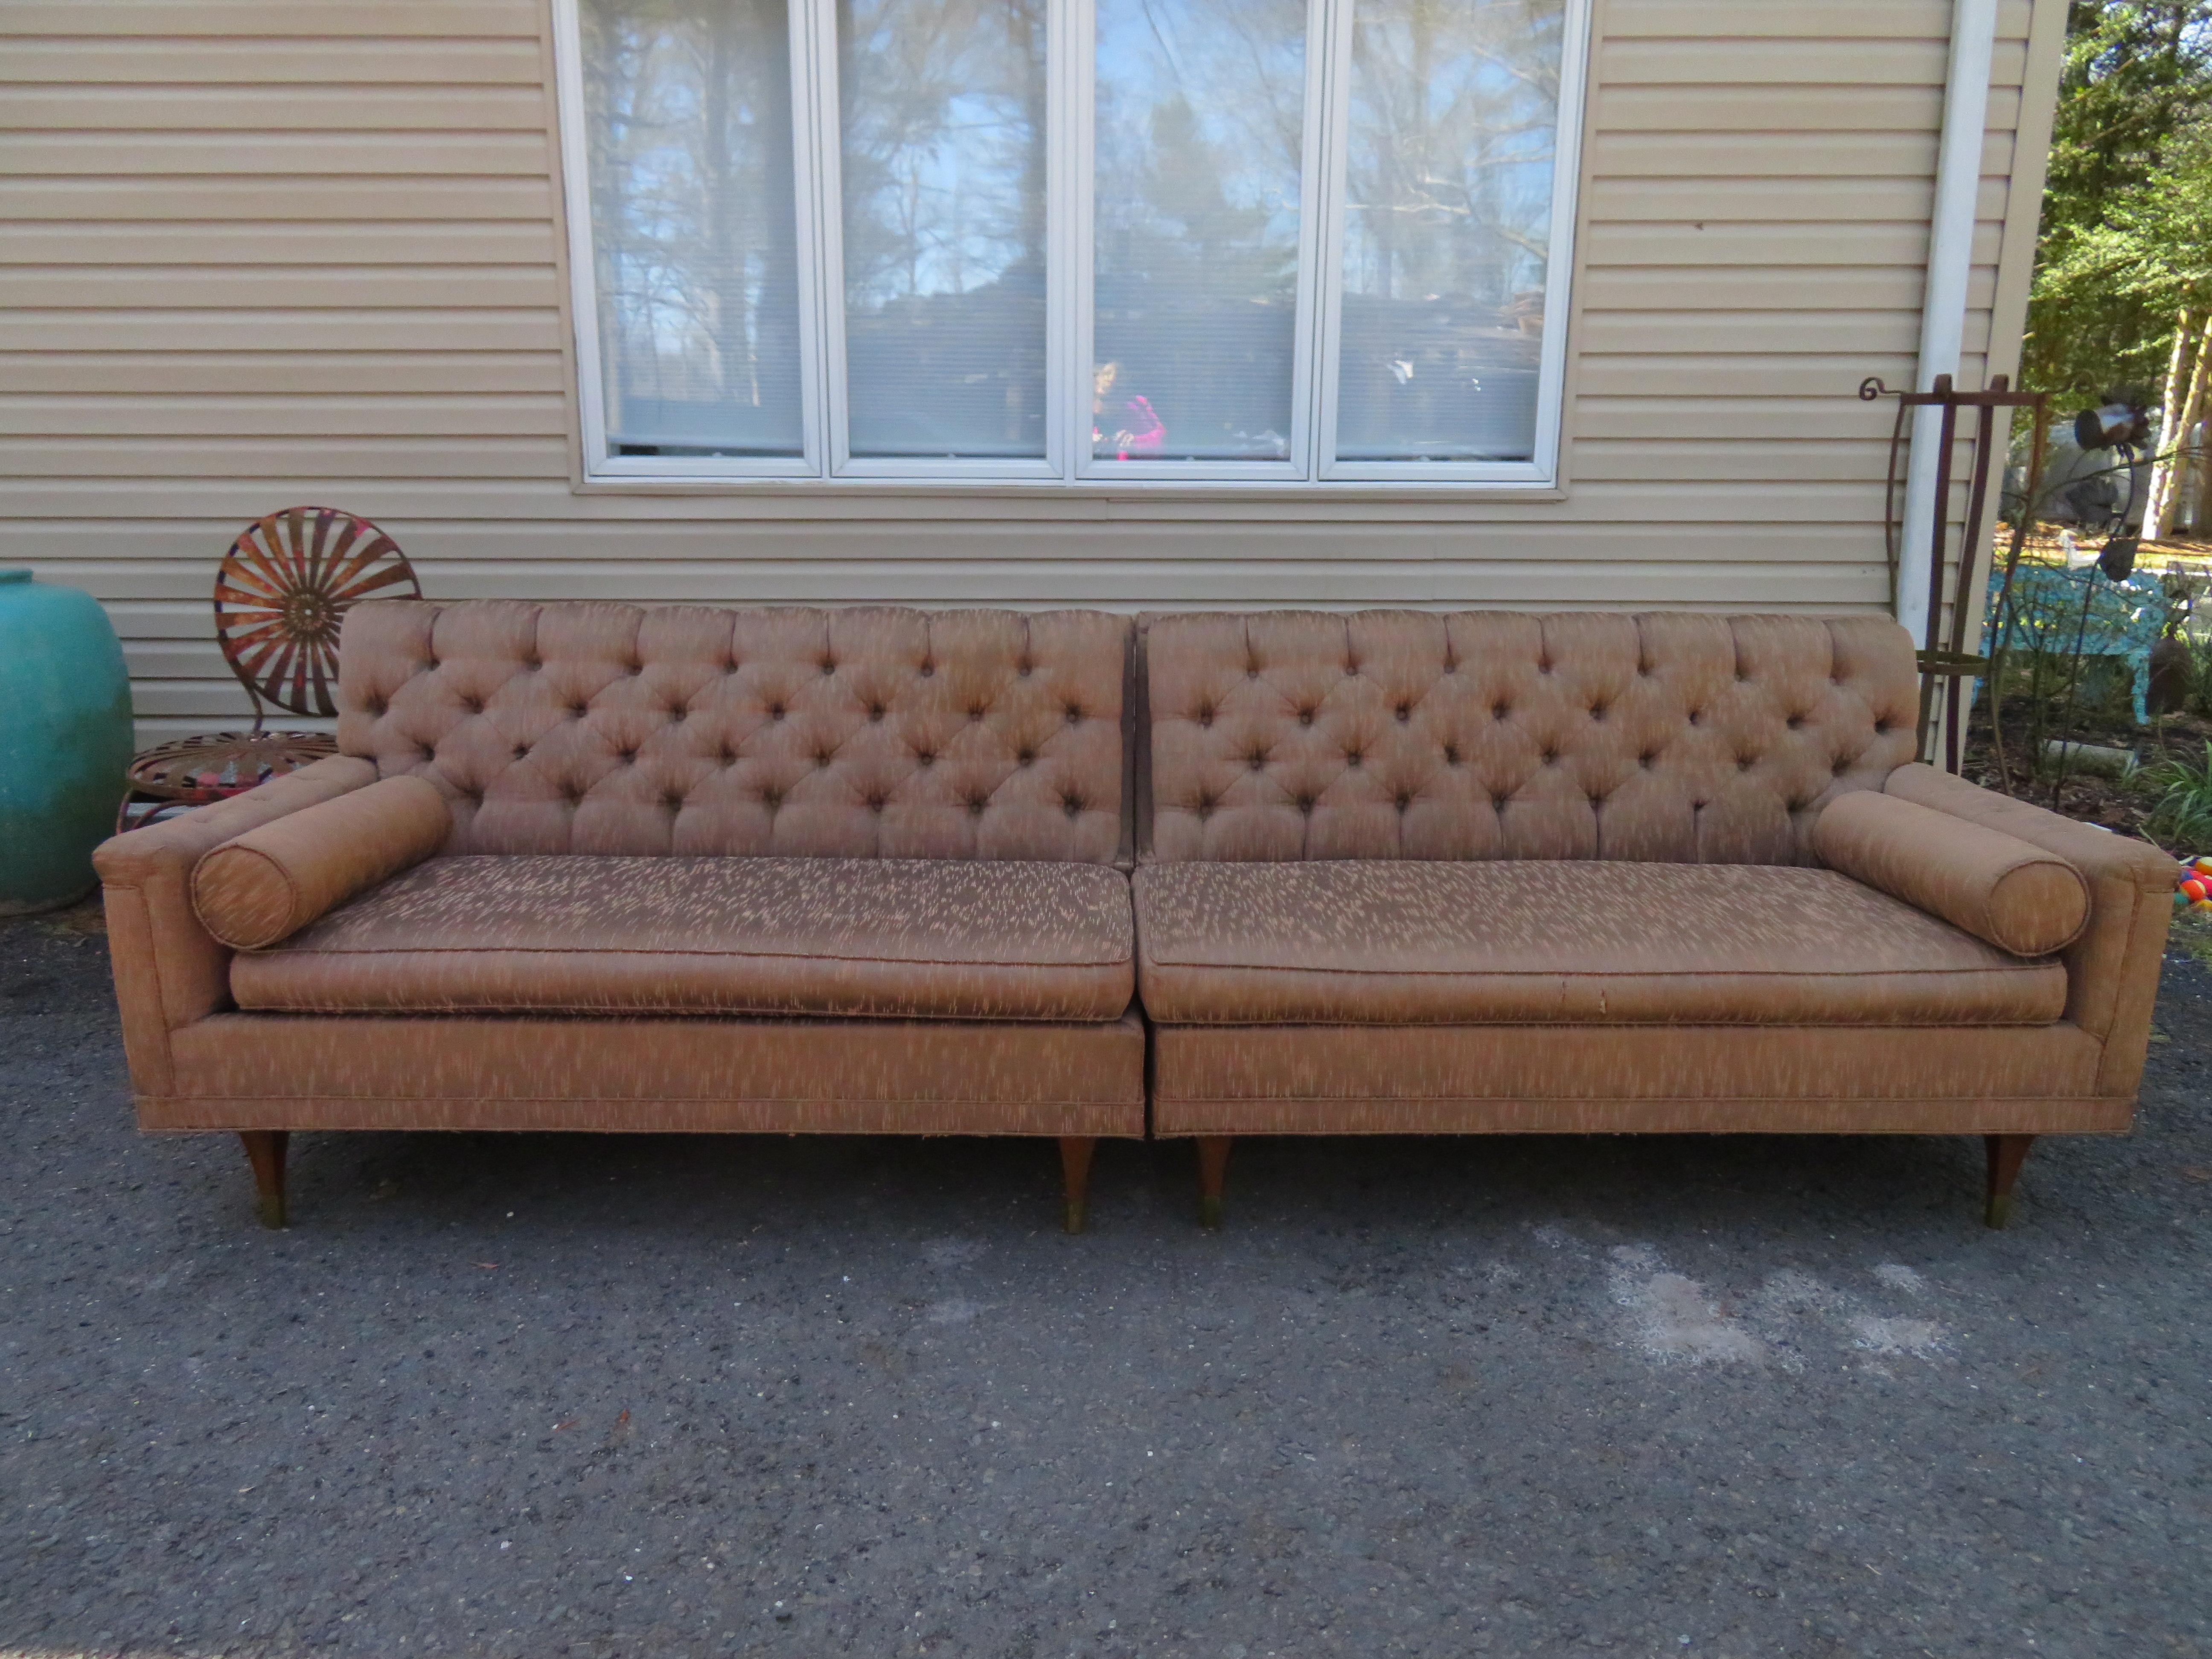 Zweiteiliges, ultra seltenes Karpen of California Sofa-Set mit getufteter Rückenlehne. Dieses super sexy Sofa kann als L-förmiger Querschnitt oder komplett mit einem langen Sofa ausgekleidet werden. Wir haben gerade die wunderbaren modernen Beine